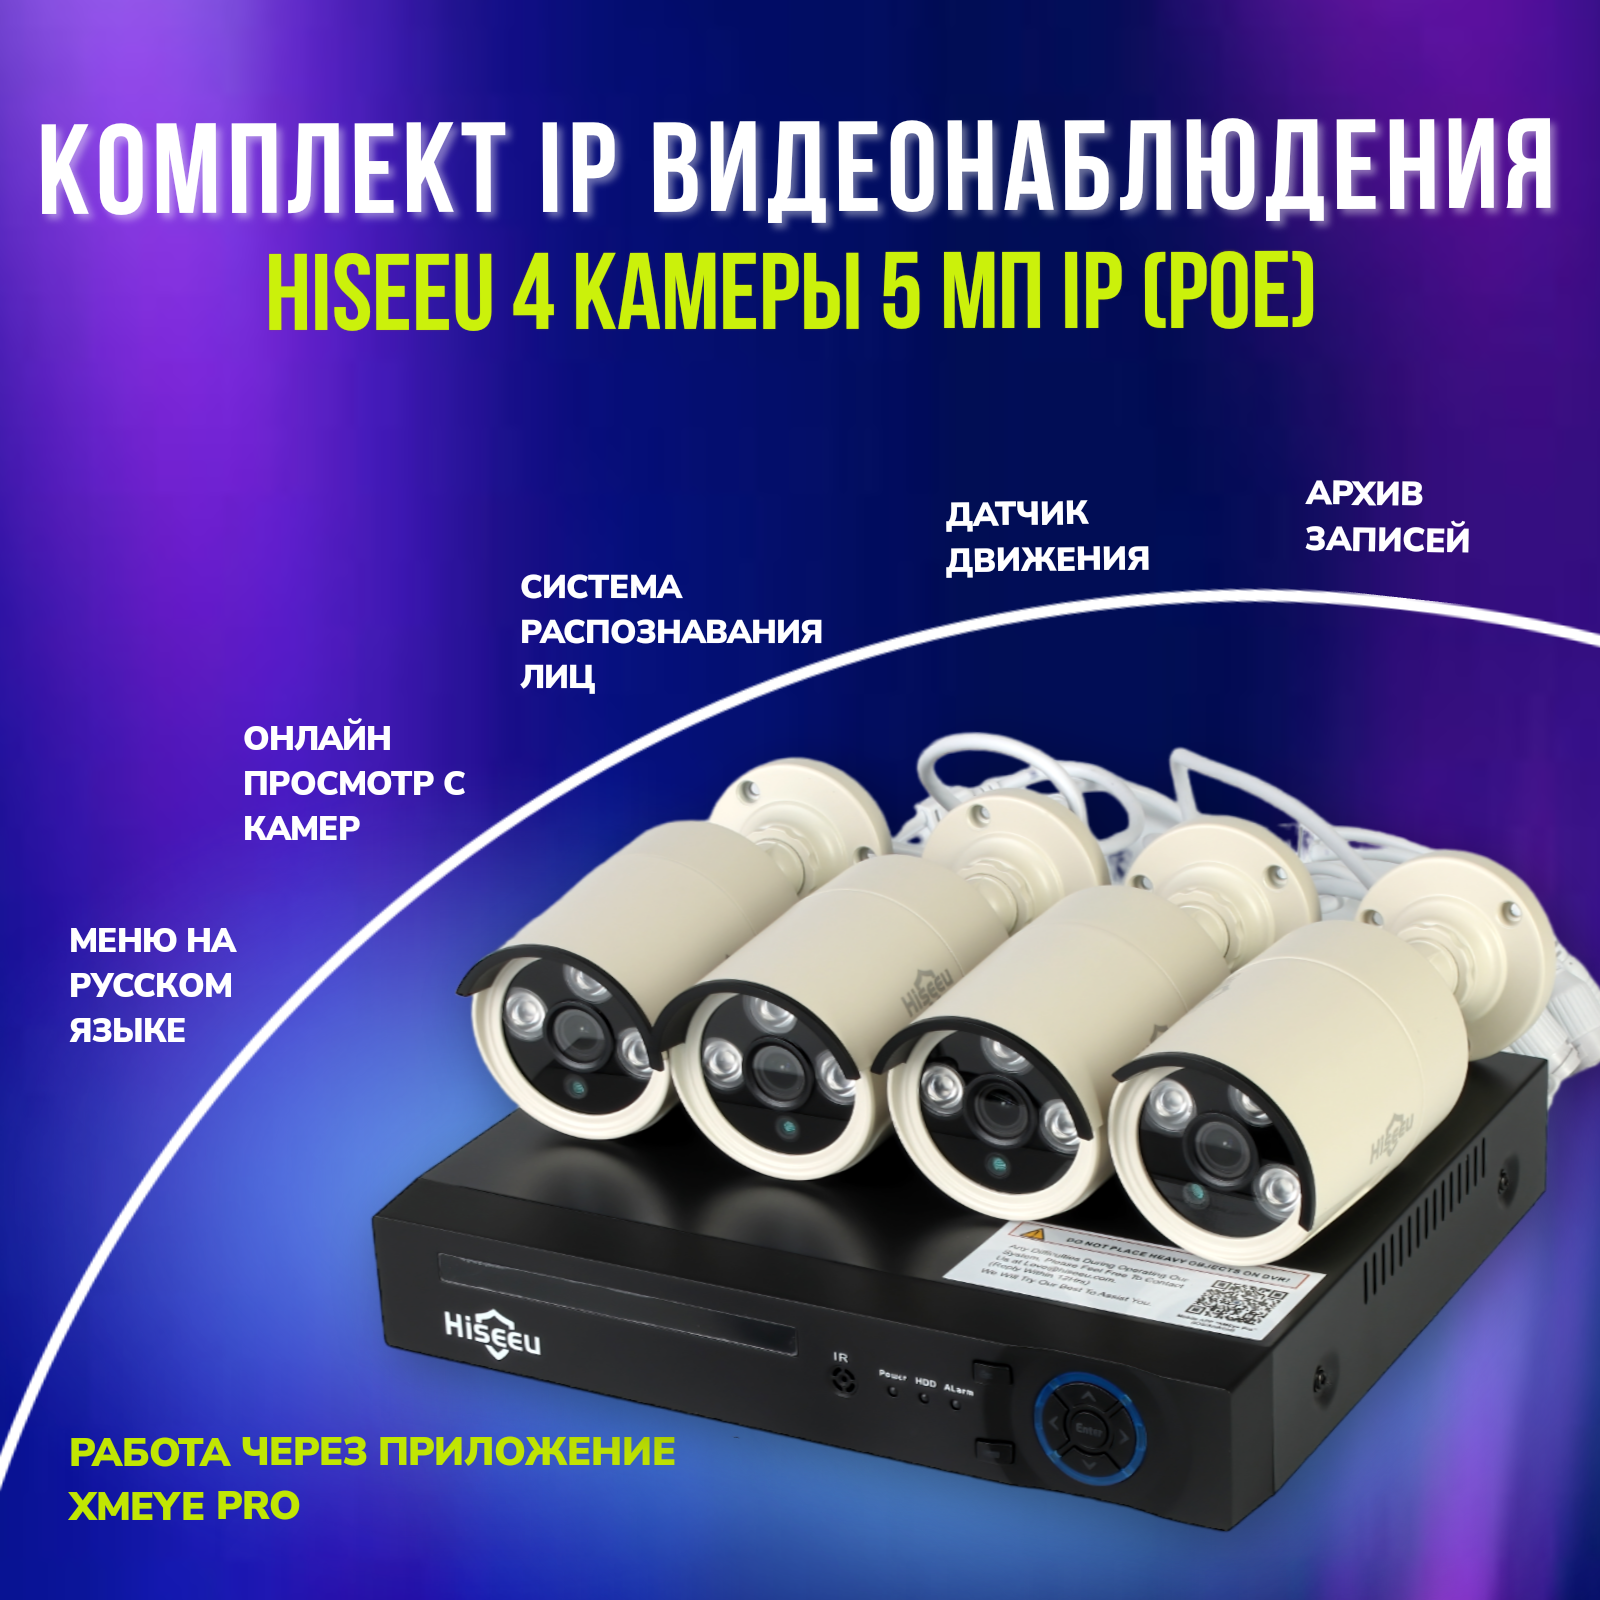 Комплект IP видеонаблюдения Hiseeu 5 мп (4 камеры)